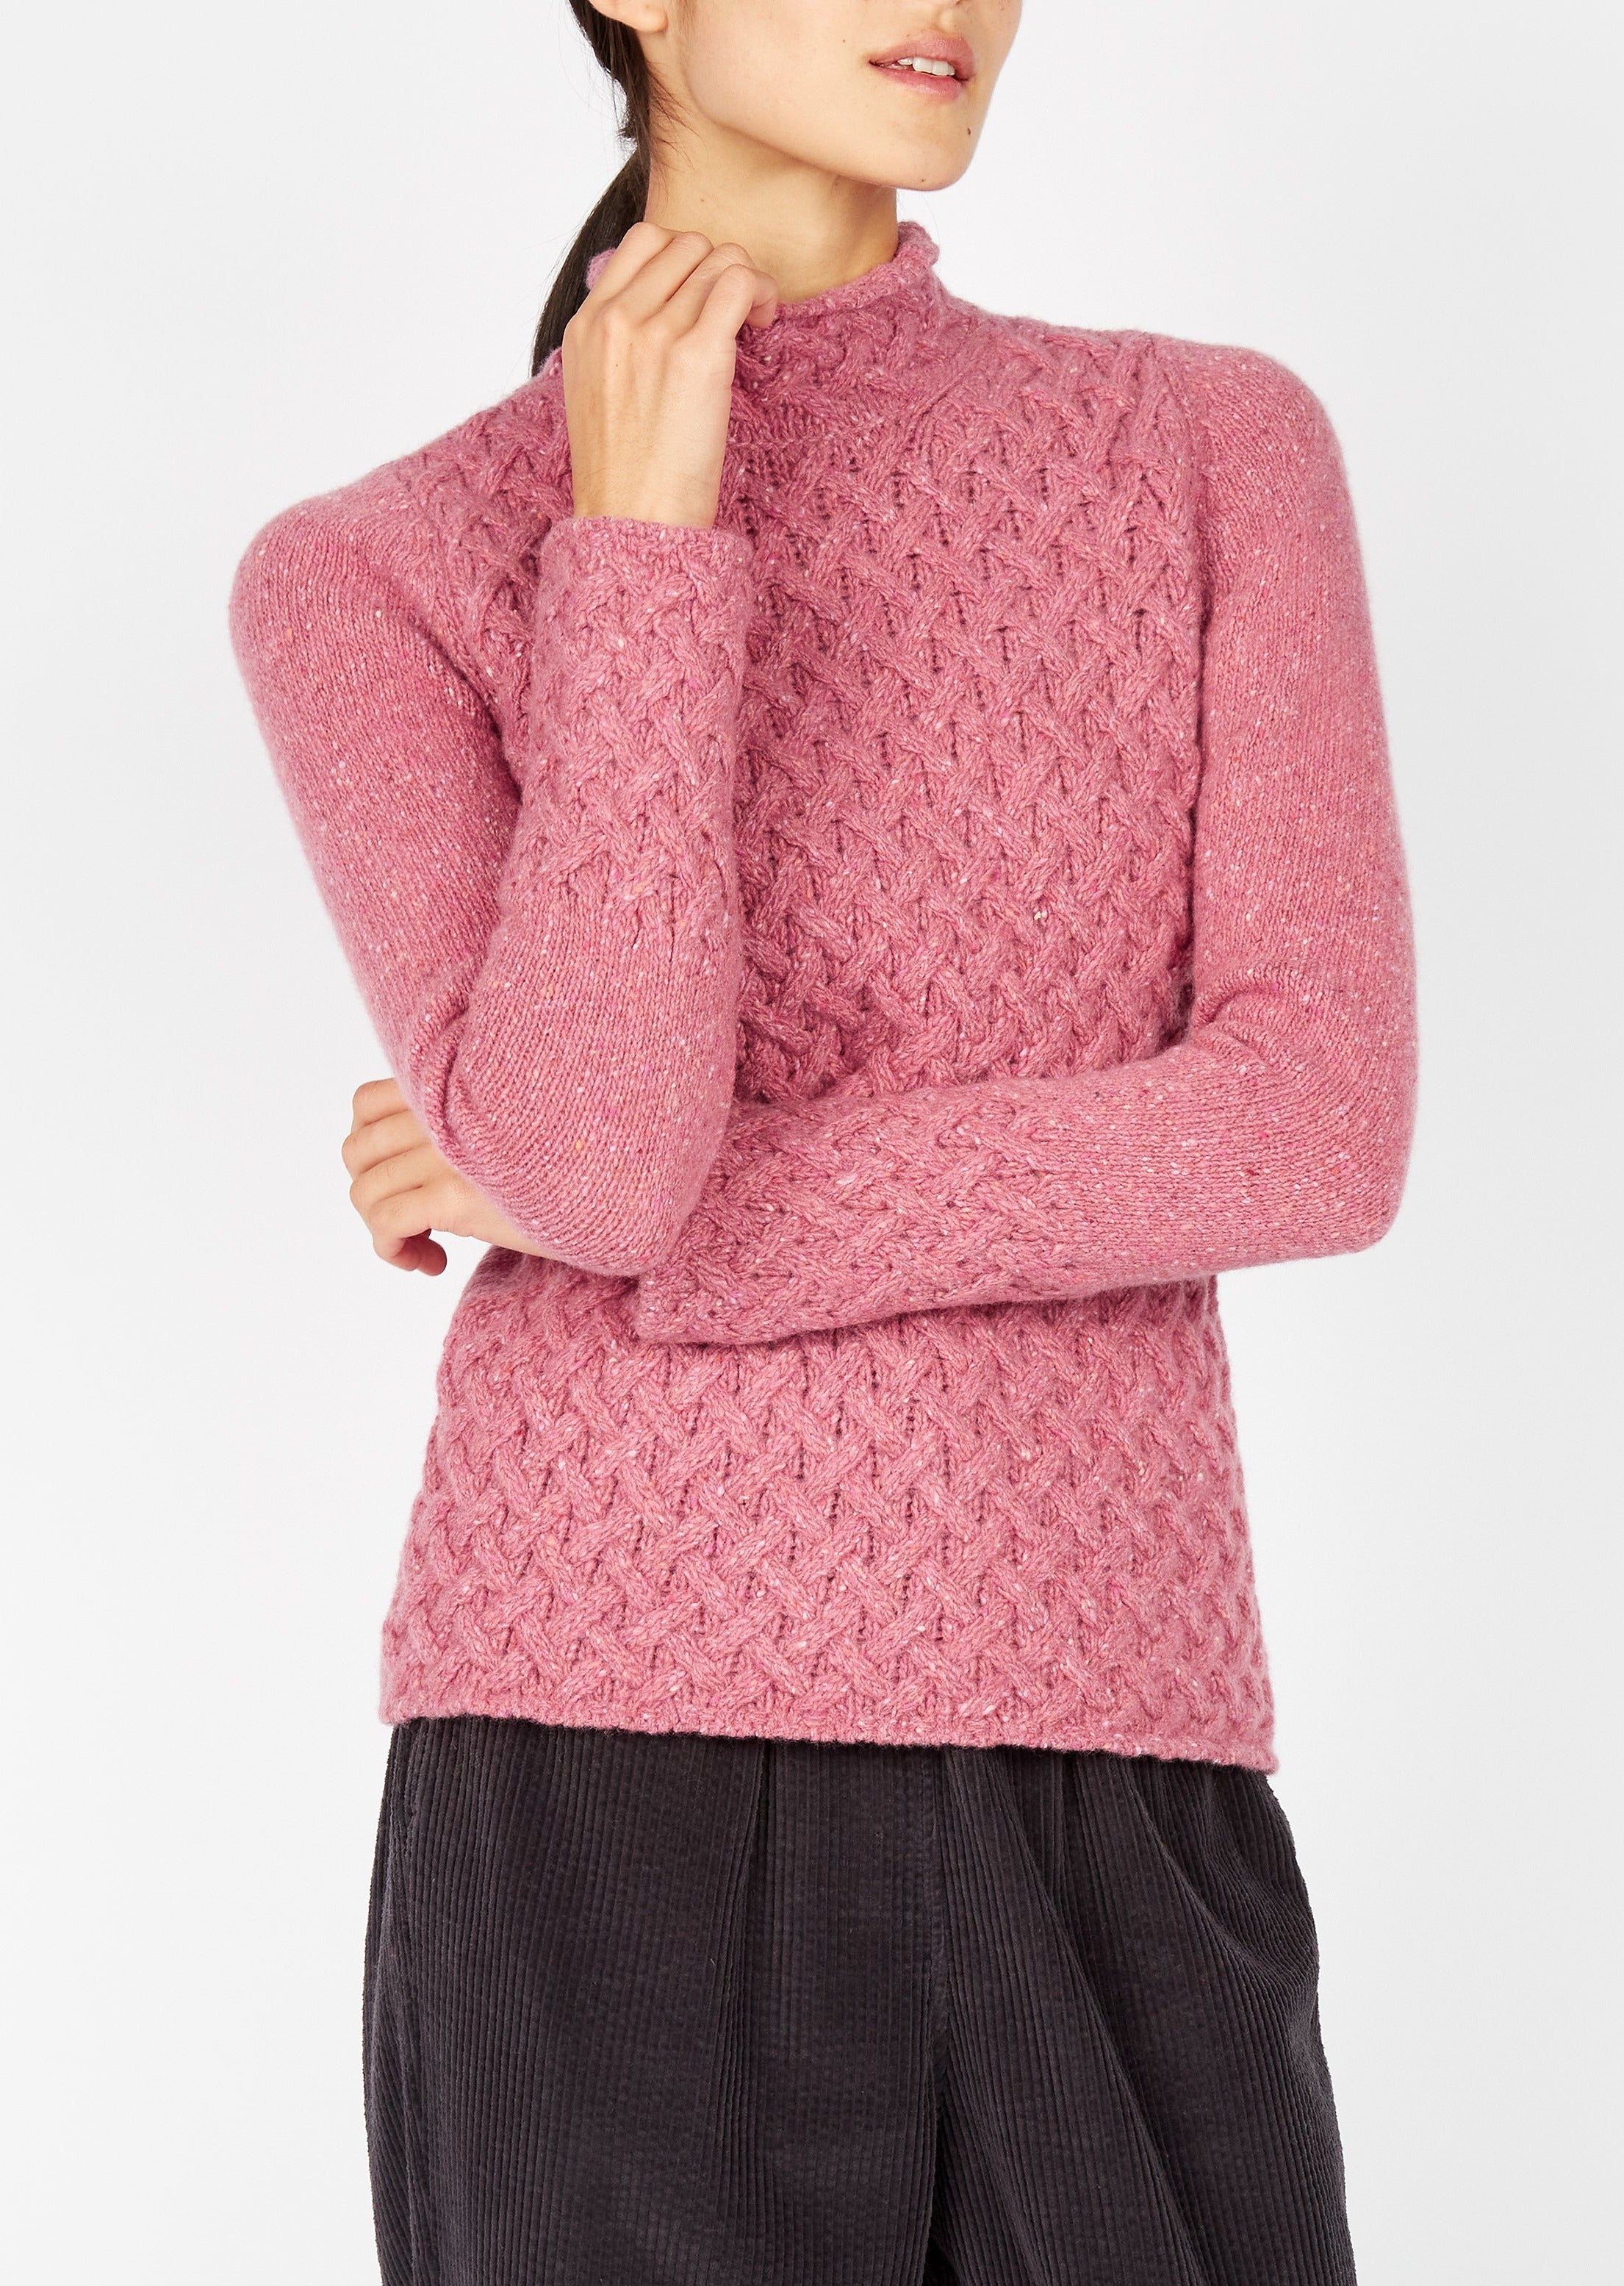 IrelandsEye Women's Trellis Aran Sweater | Bubblegum